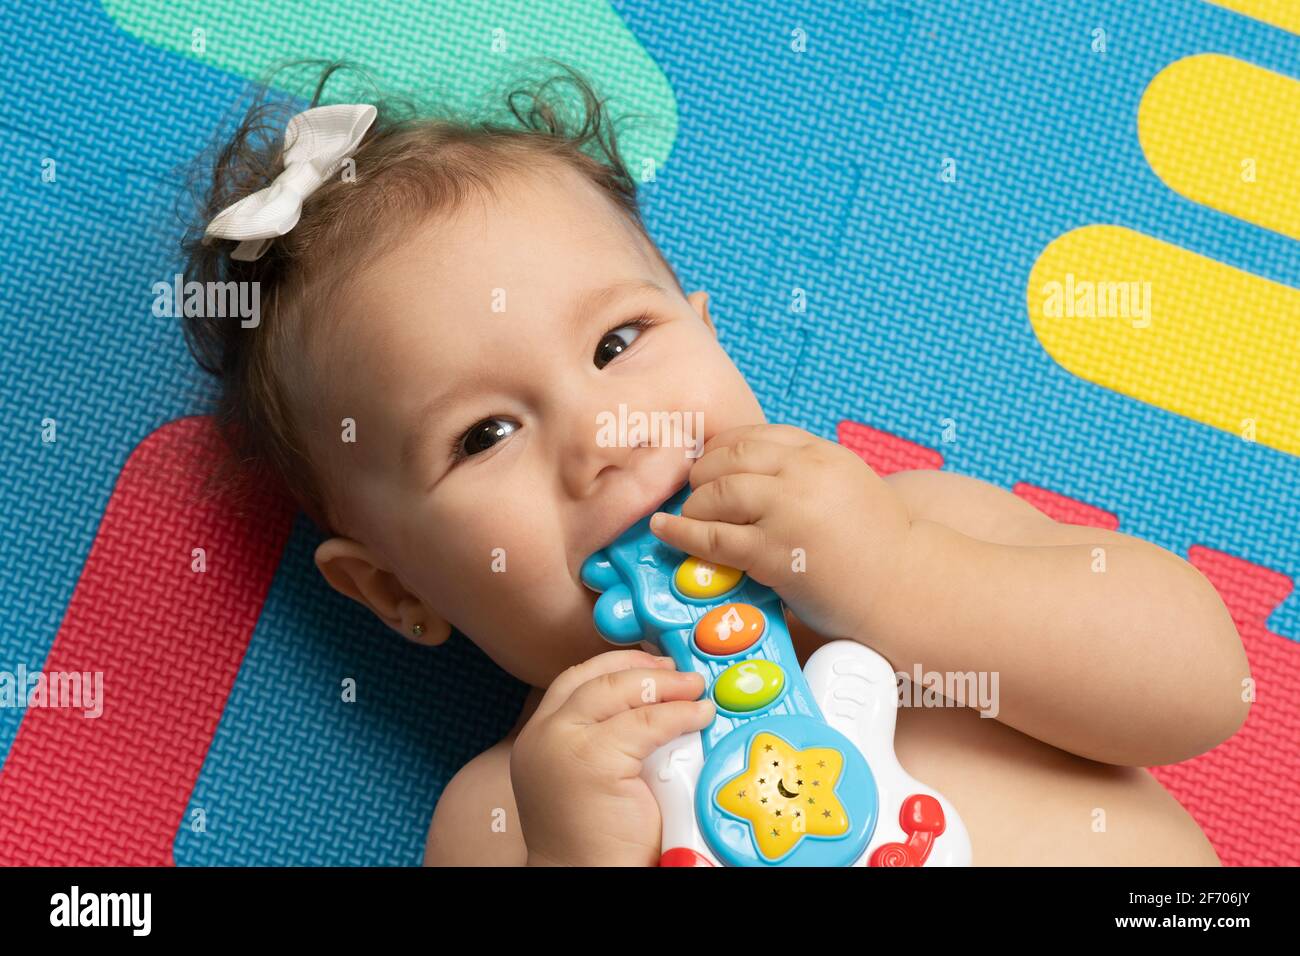 7 Monate altes Baby Mädchen Nahaufnahme auf dem Rücken mouthing Plastikspielzeug, Finger im Mund Stockfoto